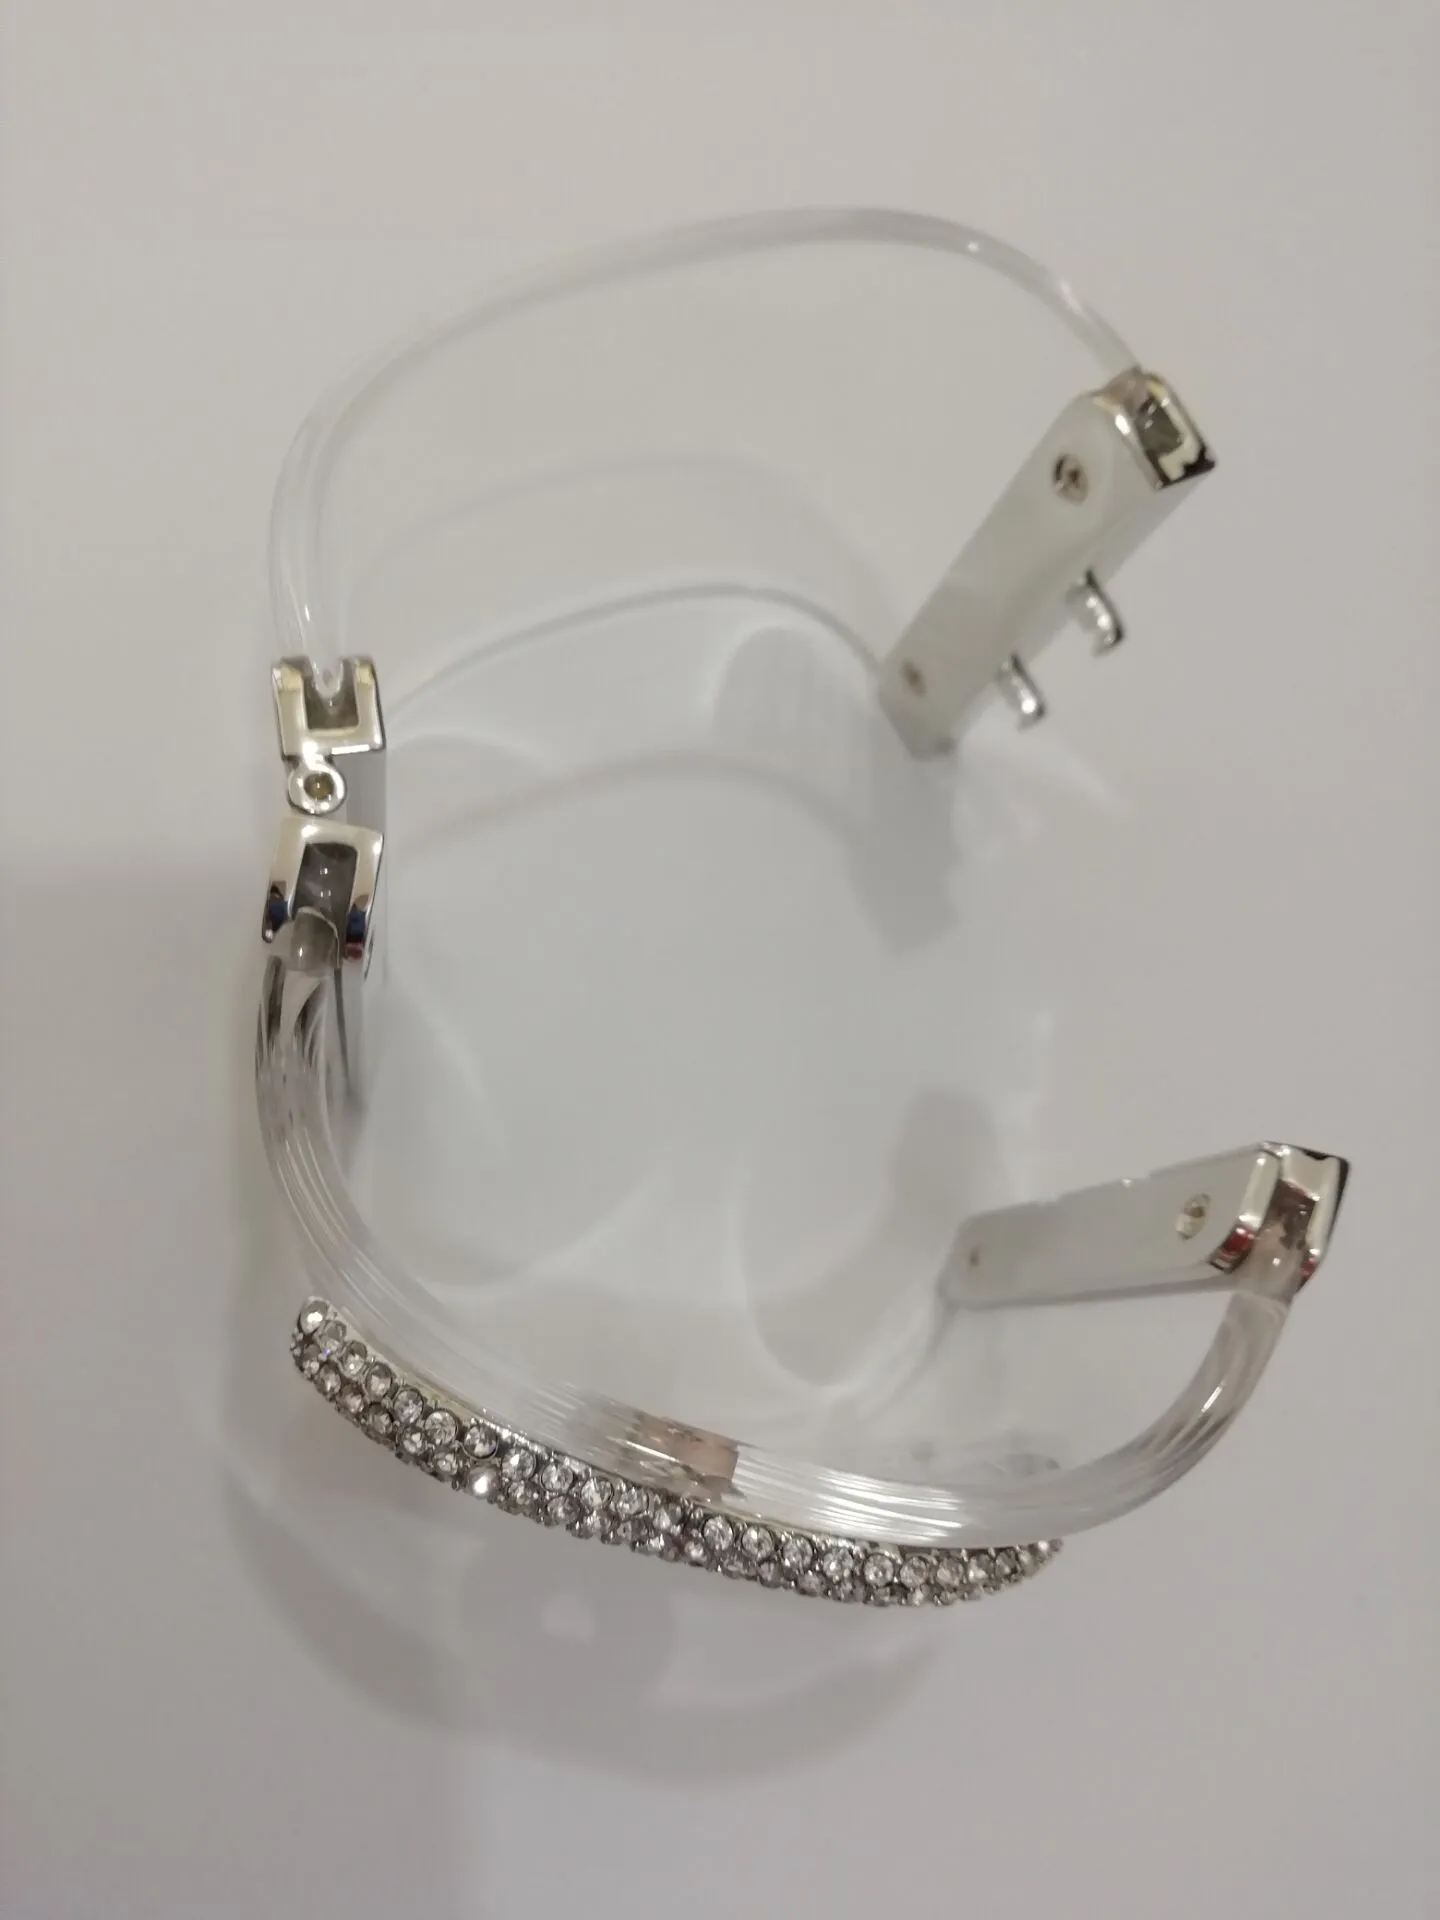 Mode populaire version haute bracelet acrylique bracelet dame bracelets de créateurs bracelets pour bijoux de mariage de fête avec sac à main en papier289i